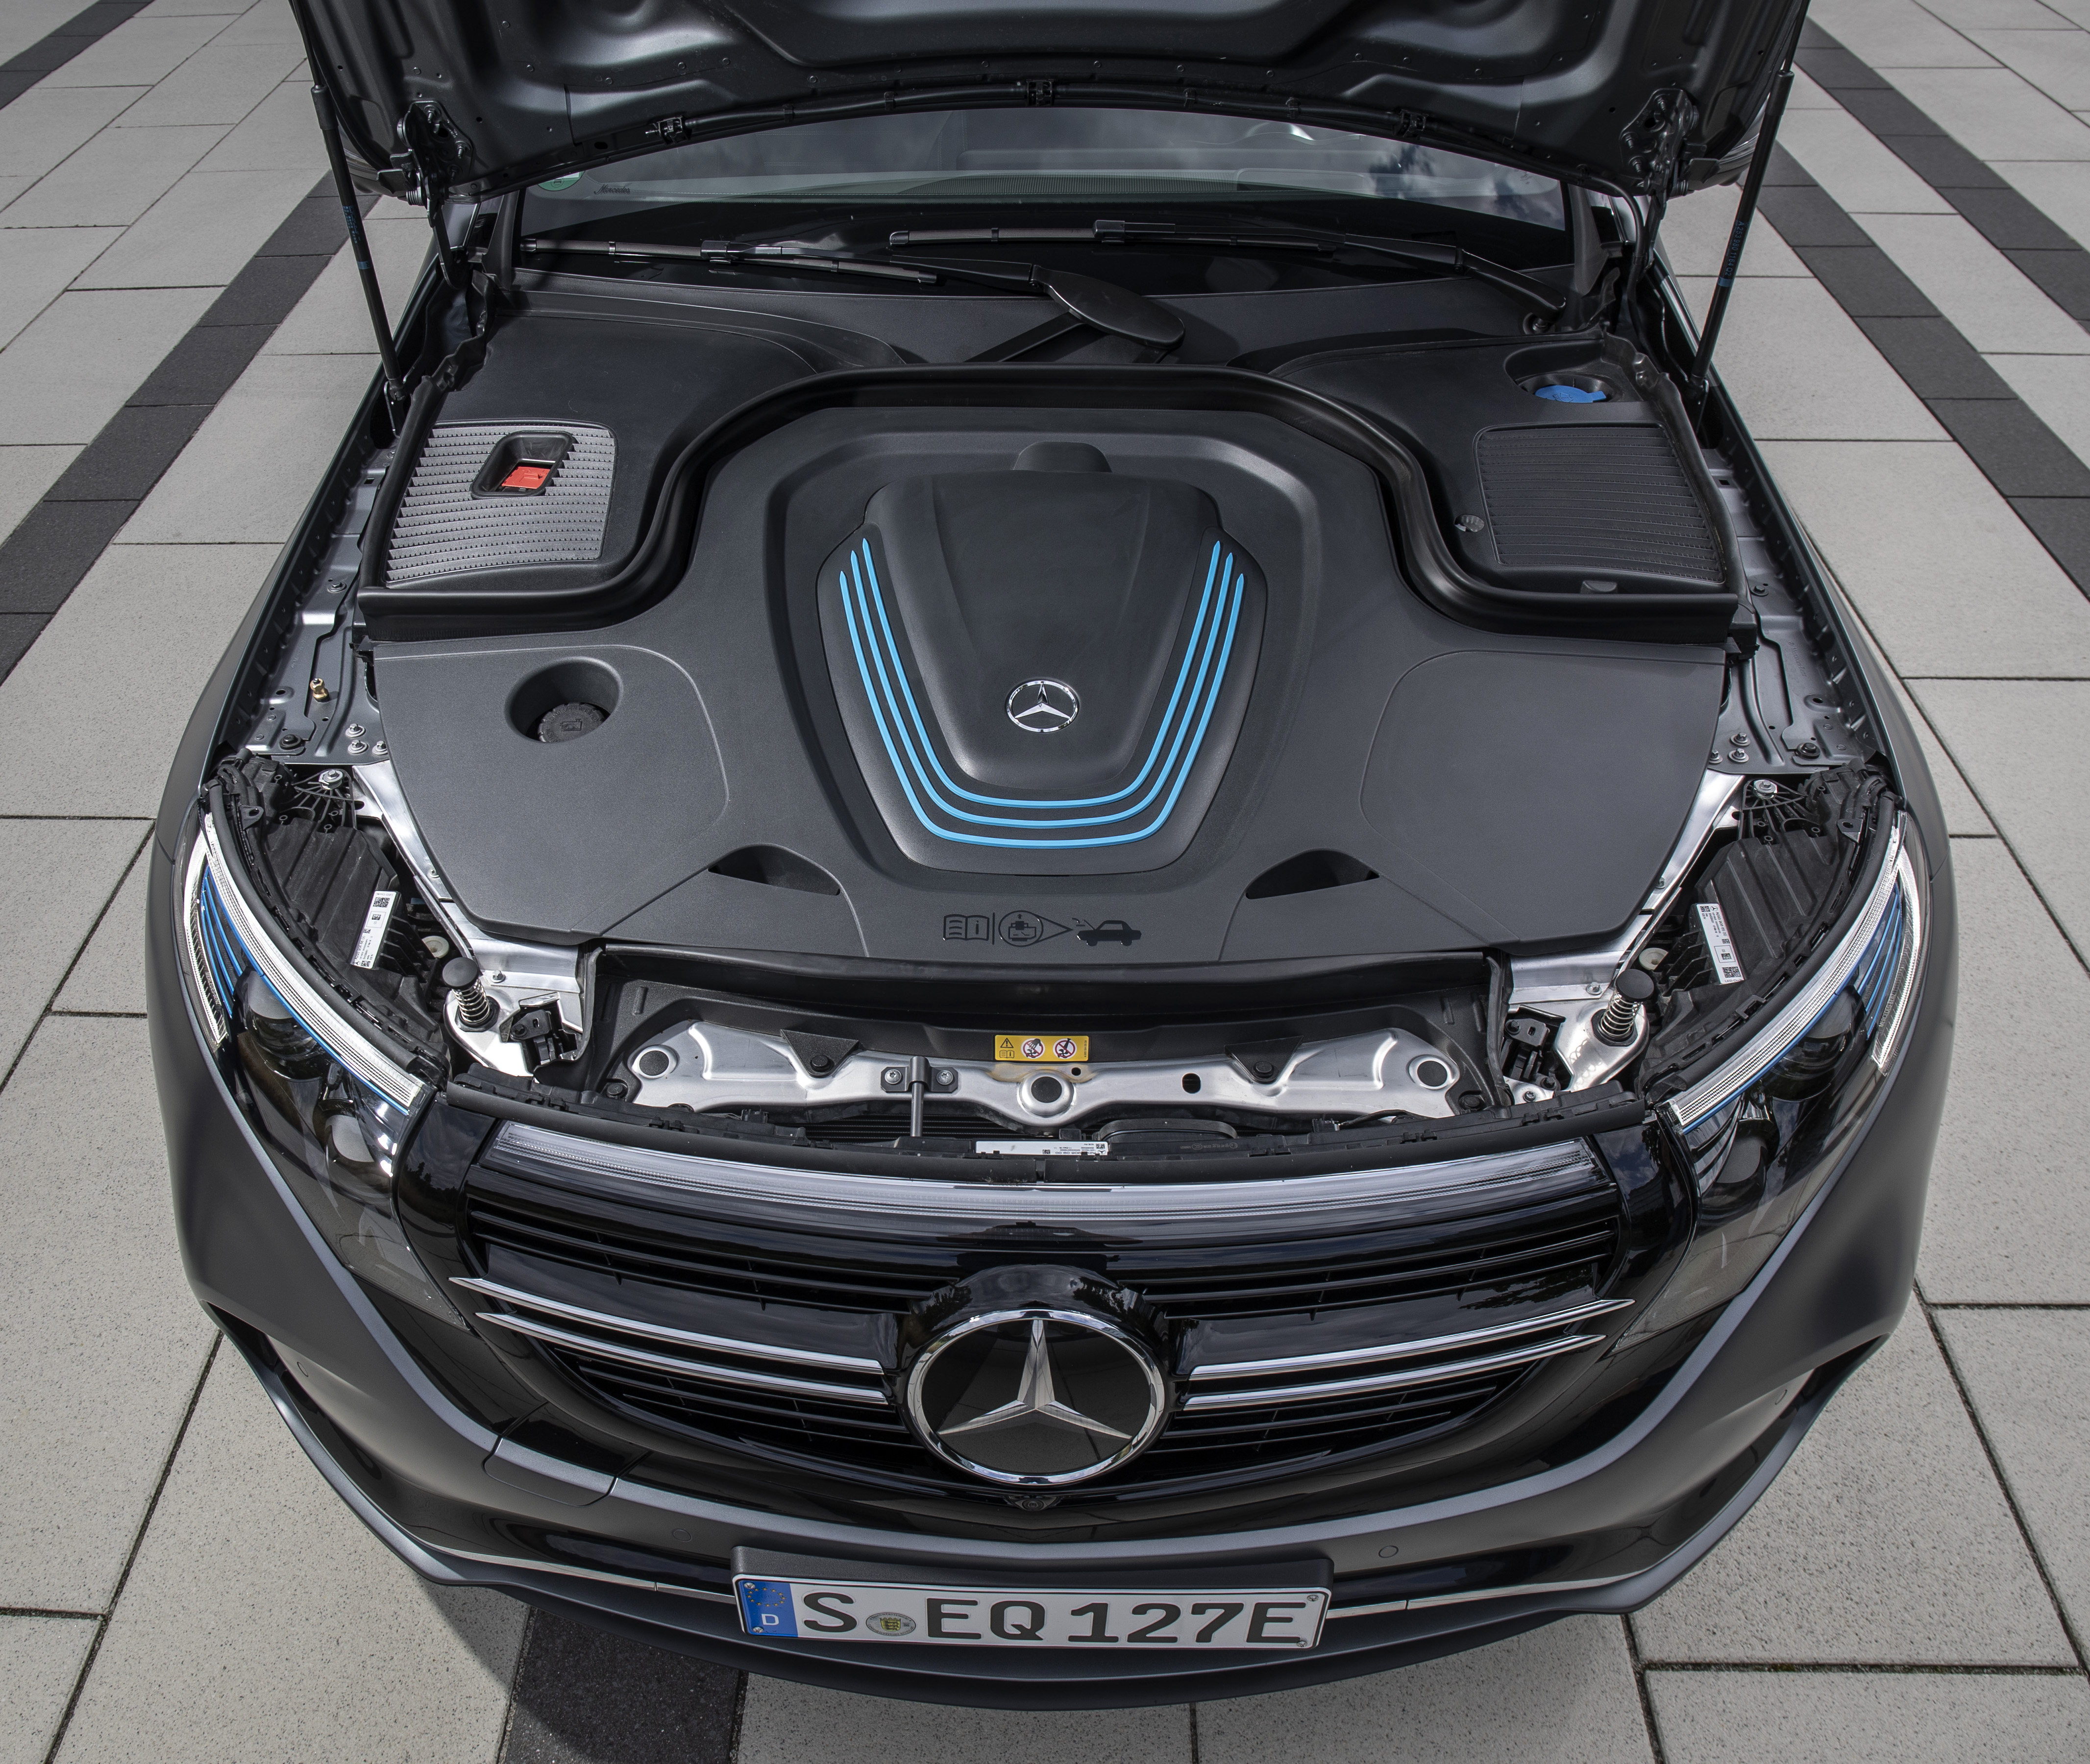 Mercedes-Benz Plug-in-Hybride - die neue EQ Power Familie Frankfurt 2019Mercedes-Benz plug-in hybrids - The New EQ Power Family Frankfurt, September 2019